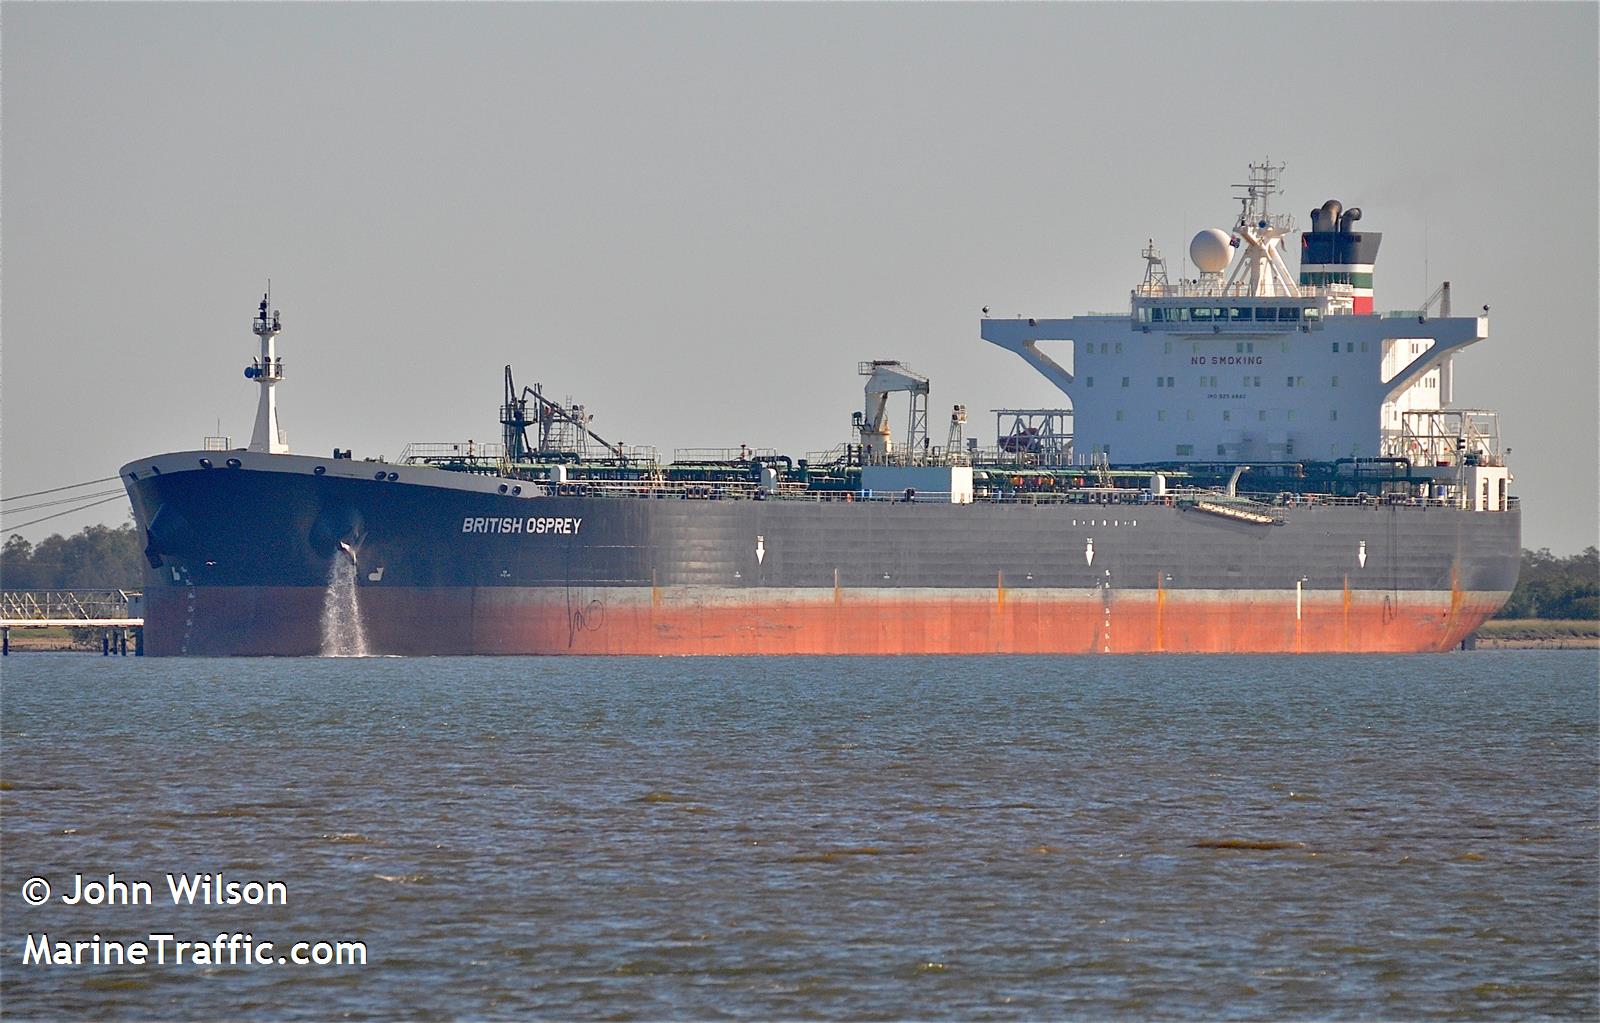 leg (Crude Oil Tanker) - IMO 9258882, MMSI 574005290 under the flag of Vietnam